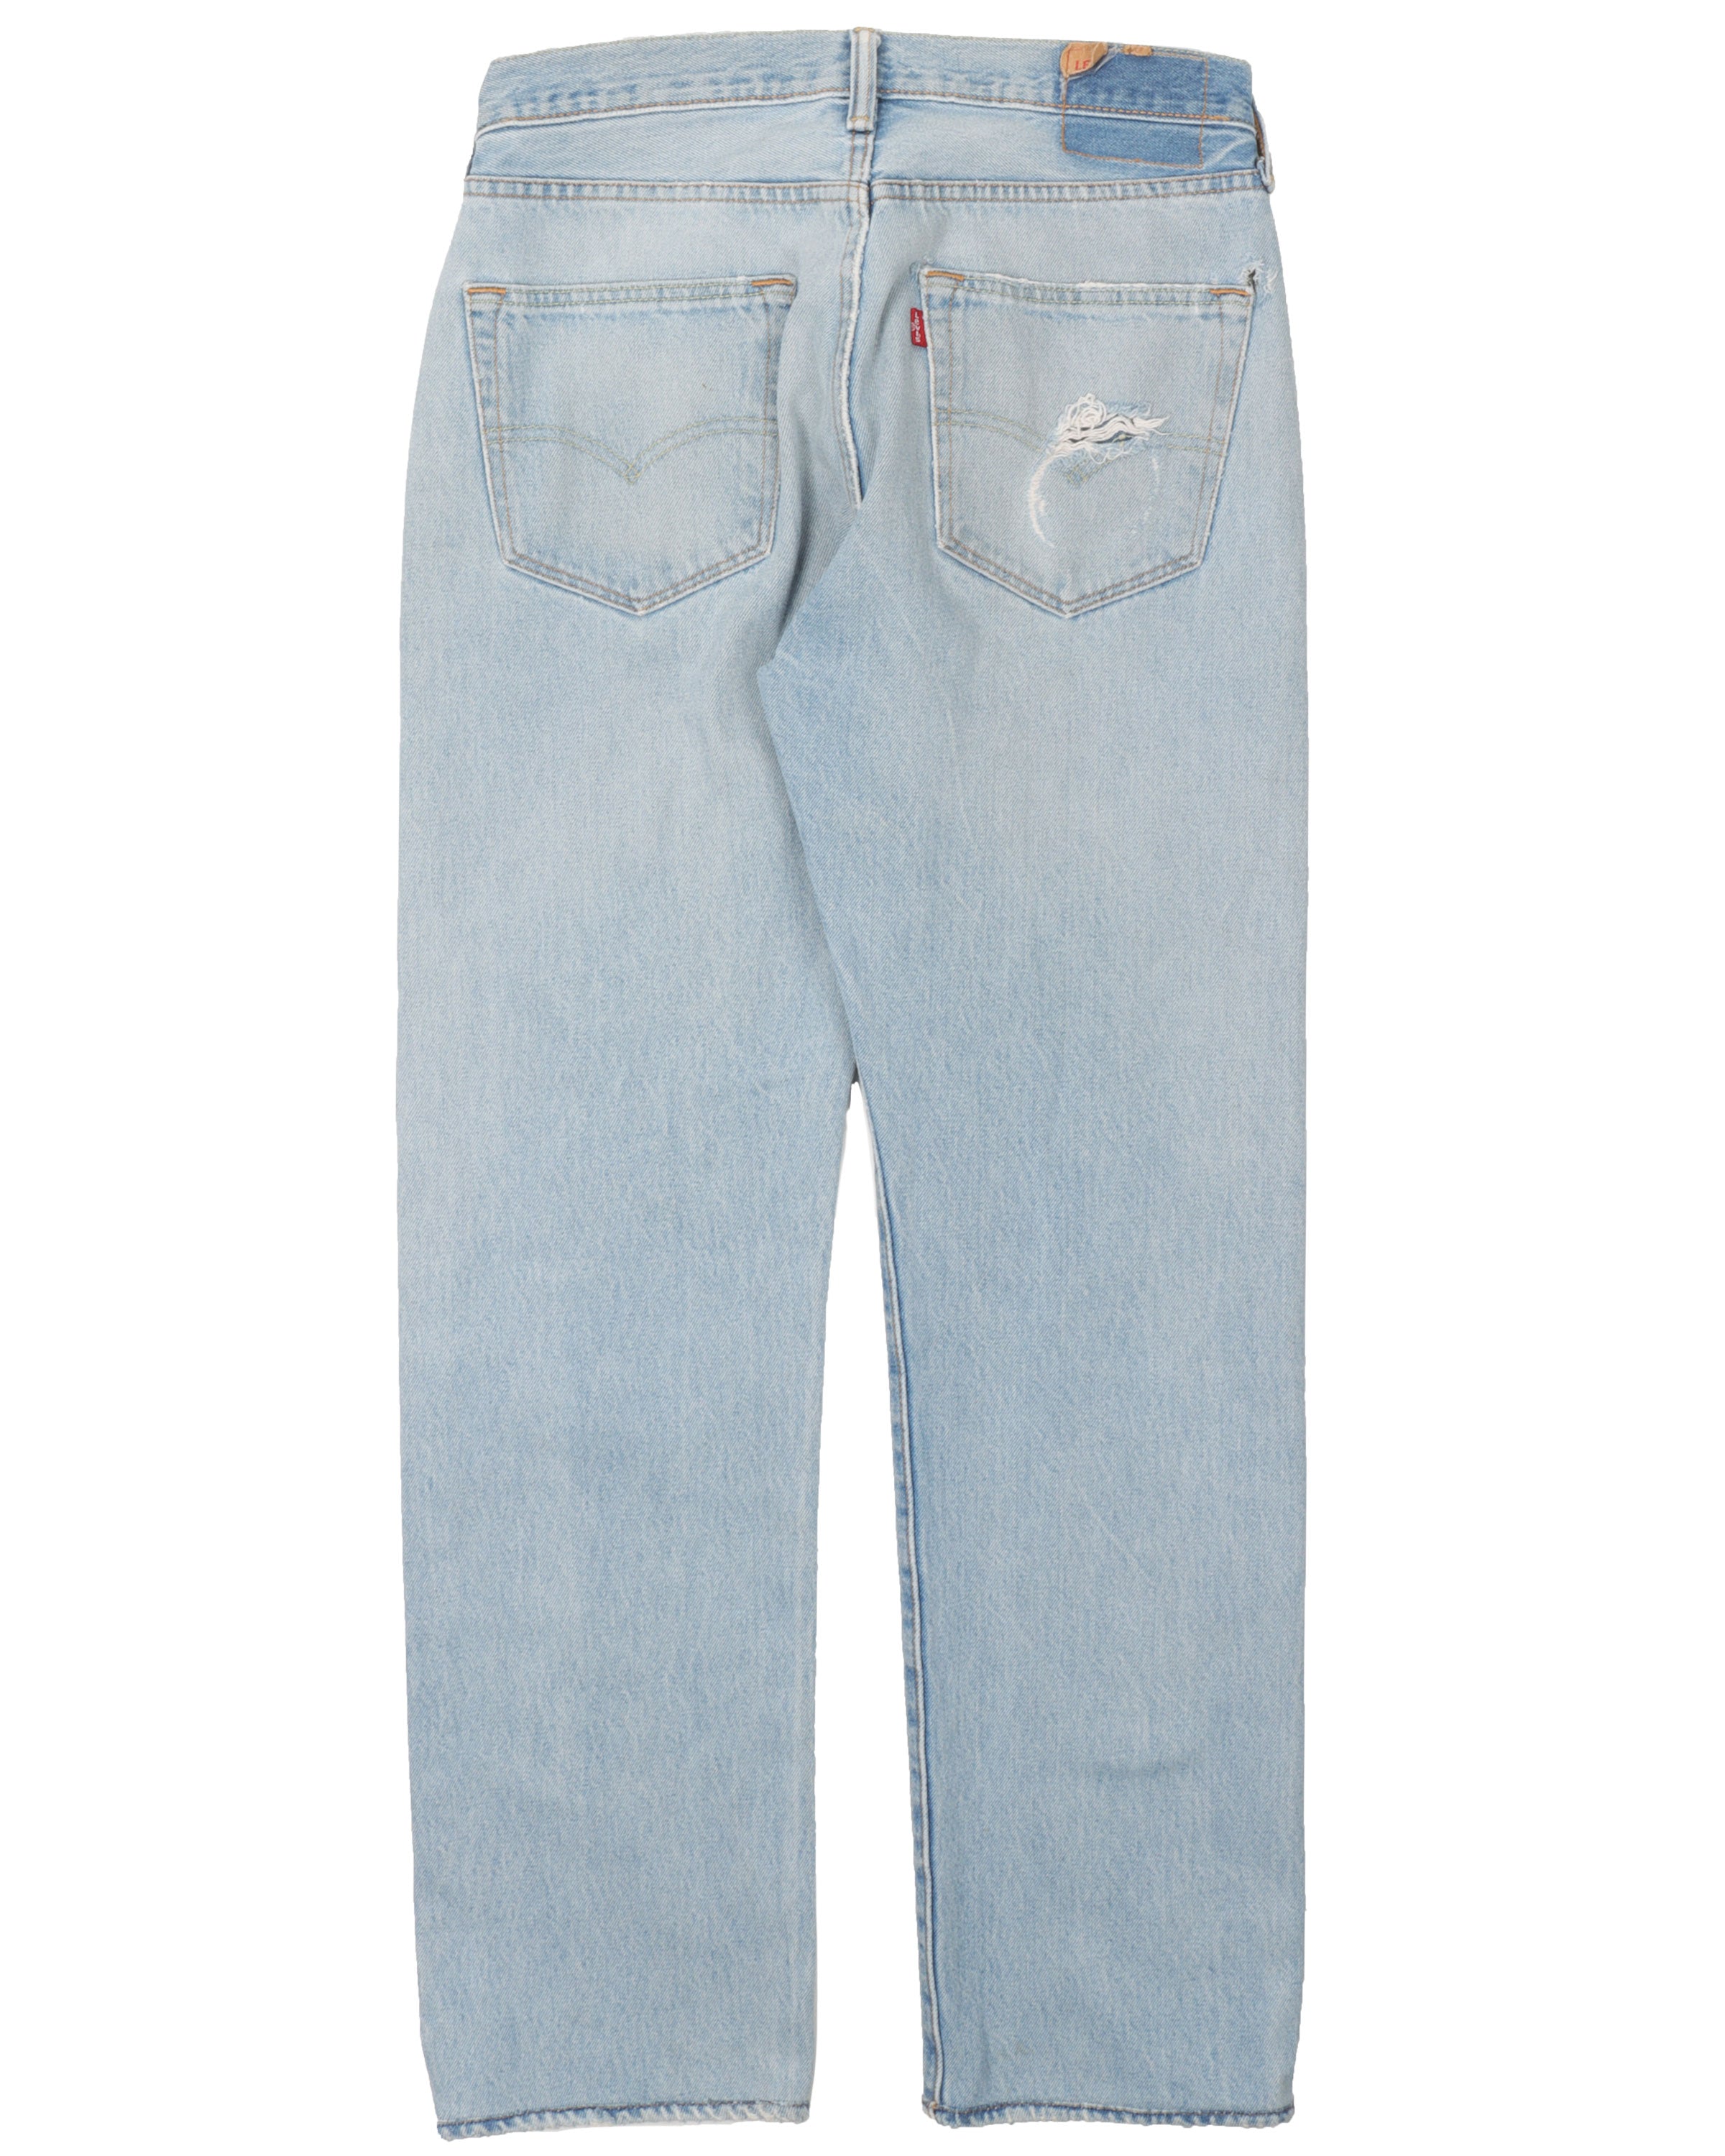 Light Wash Levi 501 Jeans